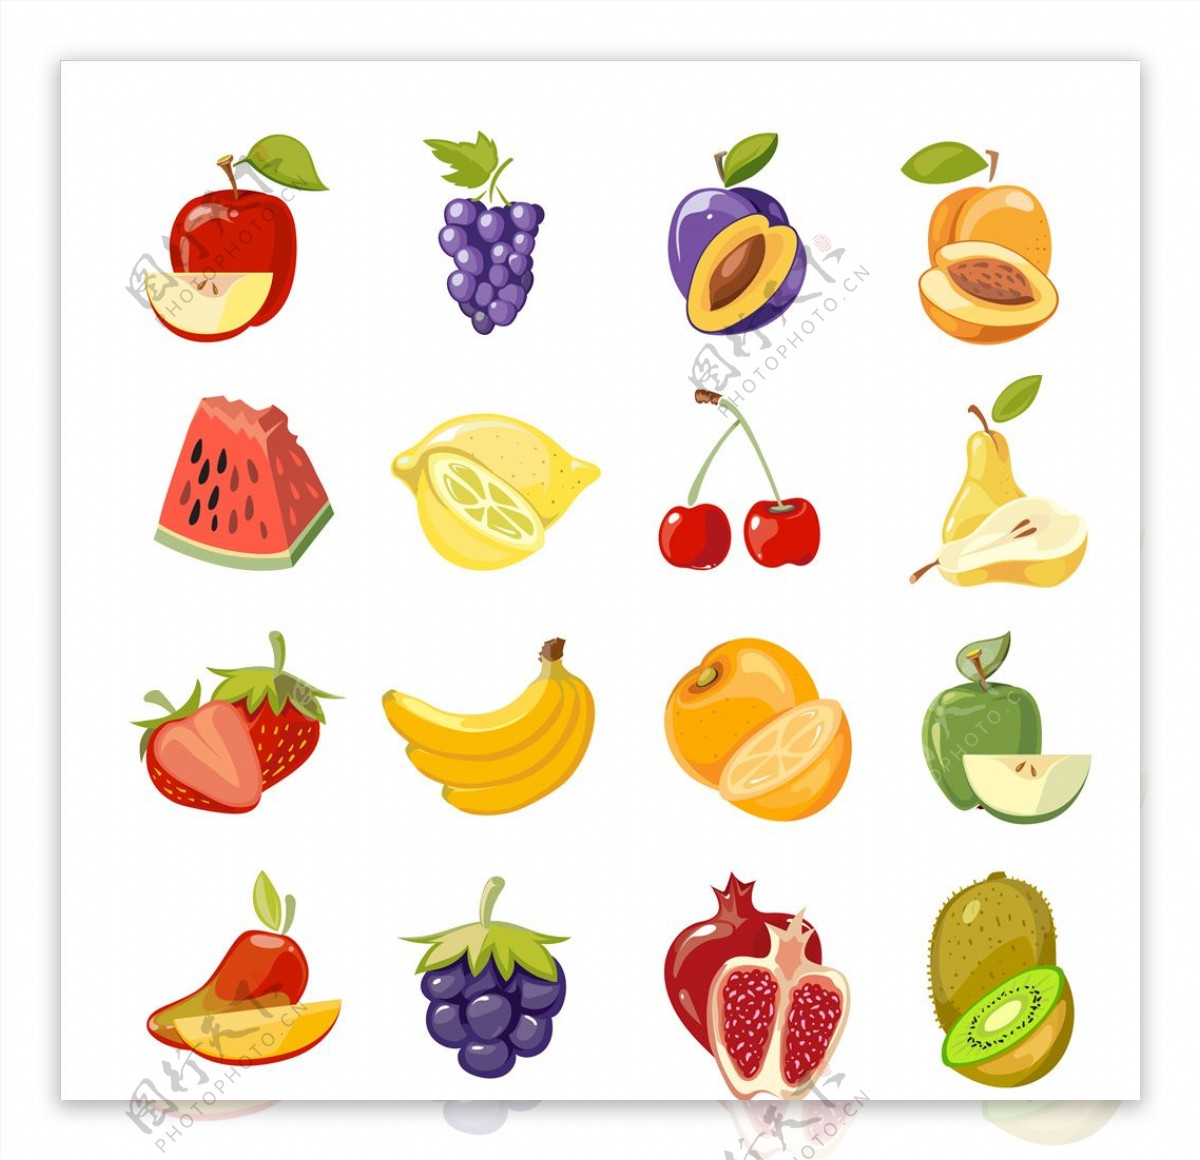 水果背景墙